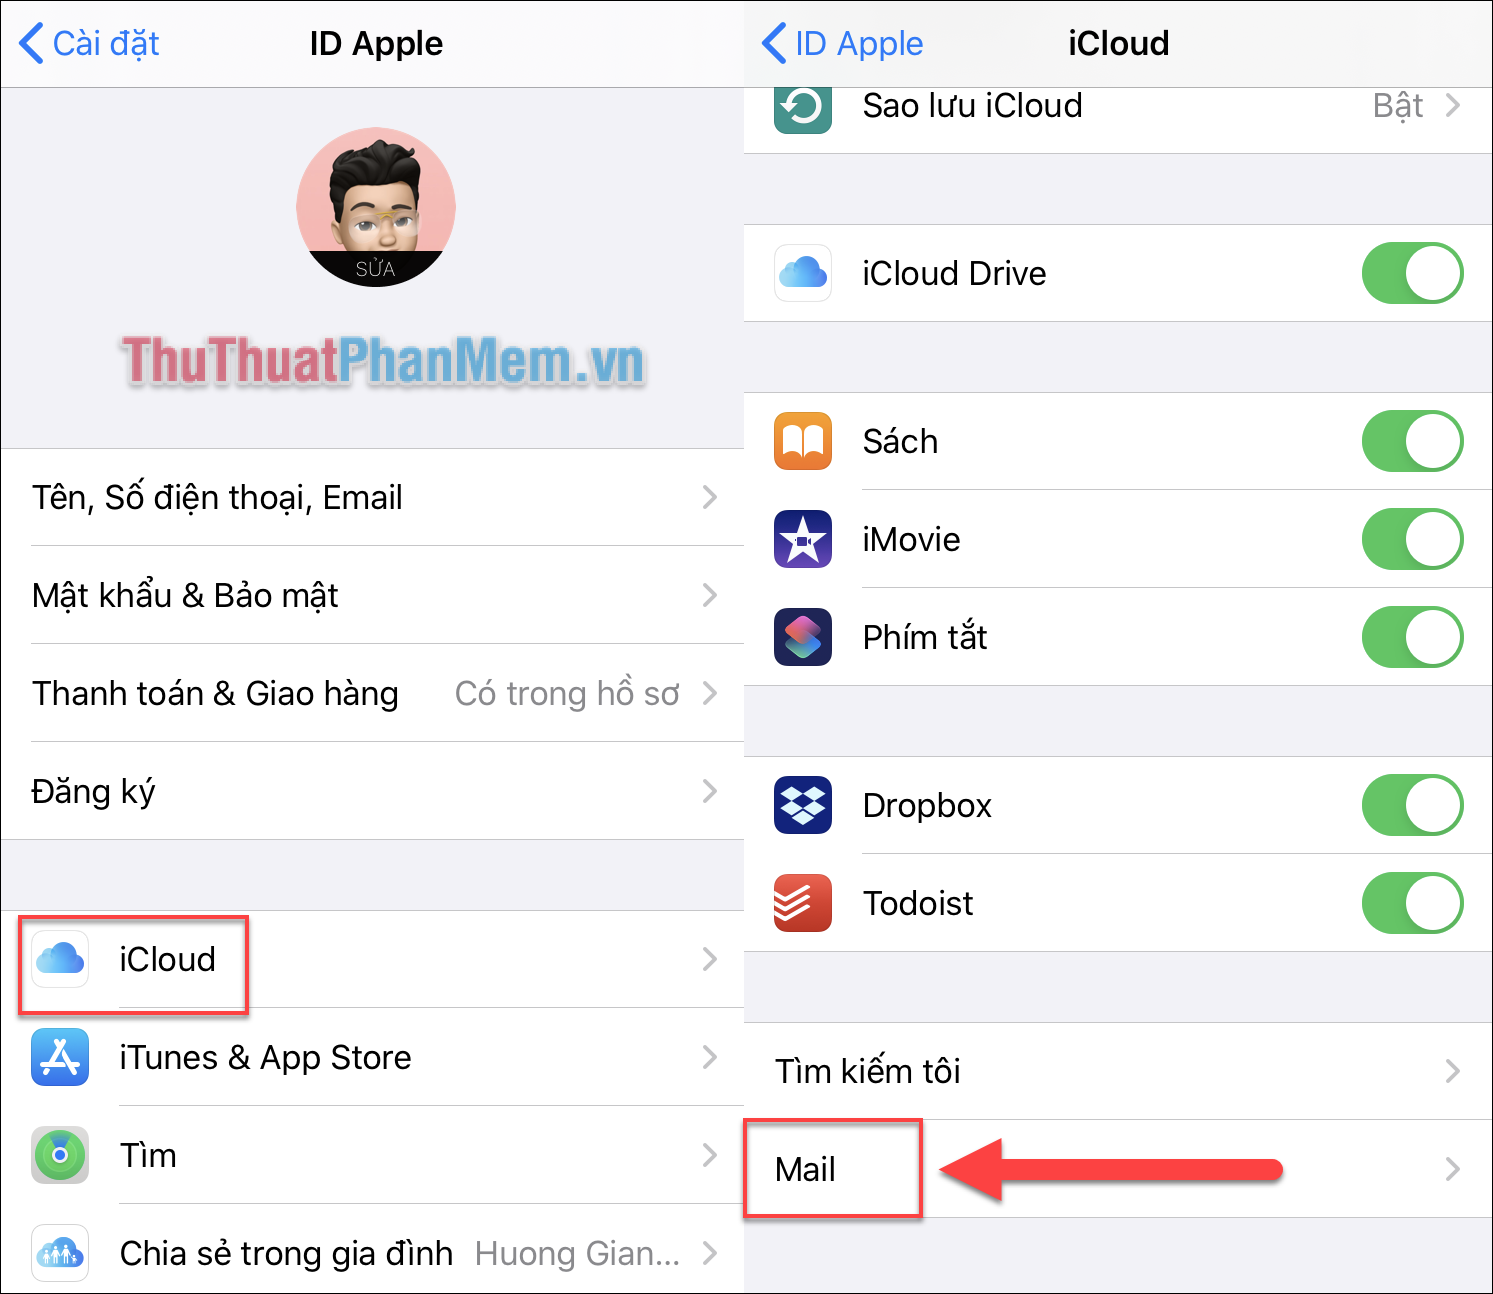 Chọn iCloud và chọn Mail